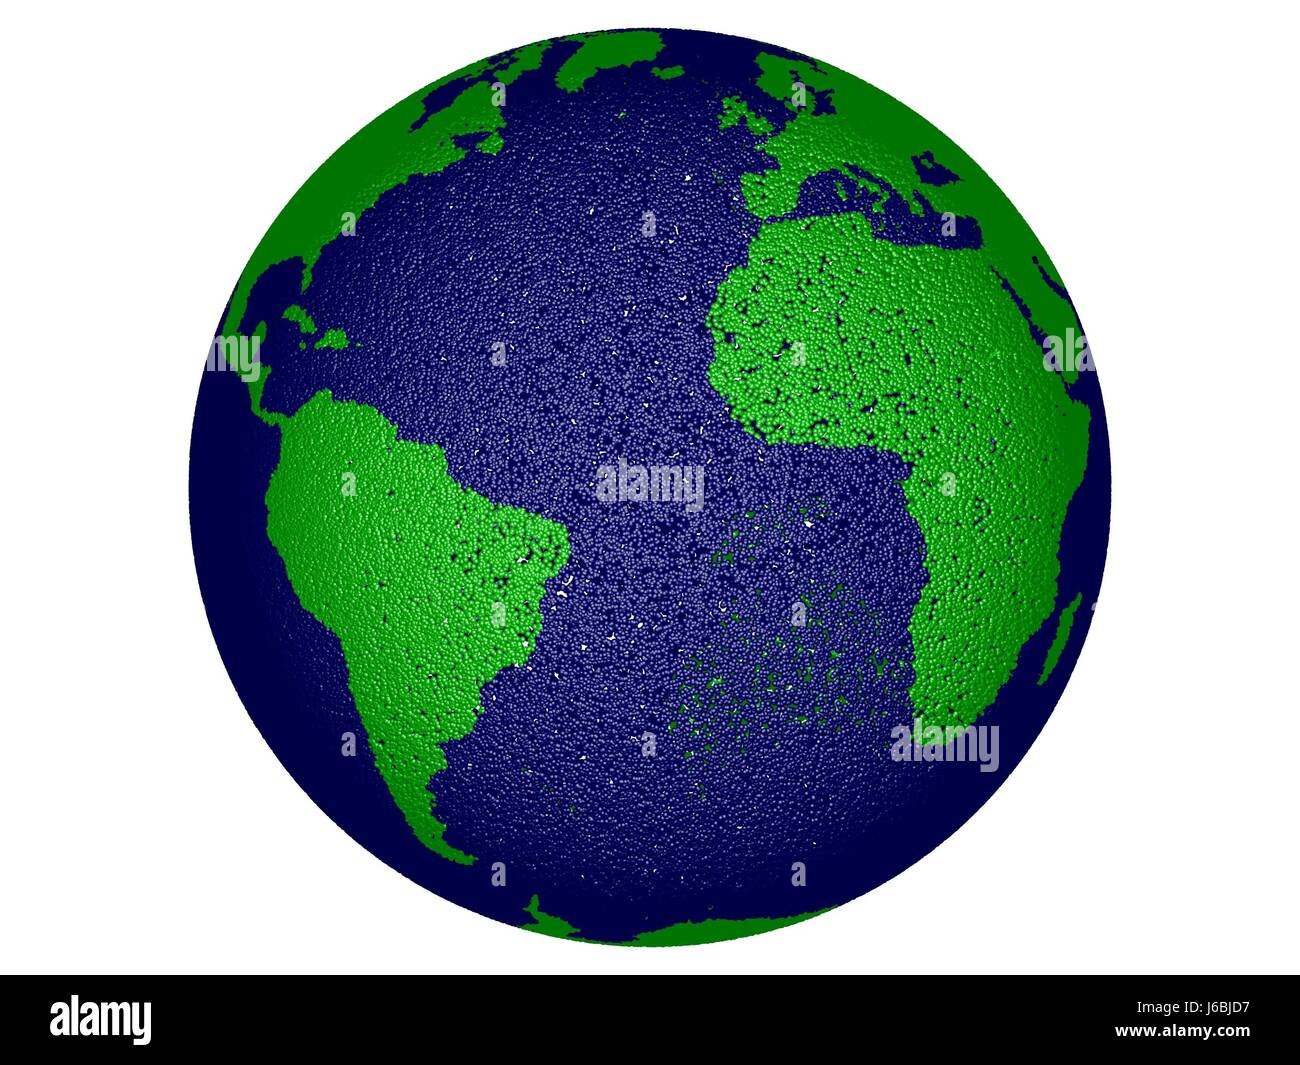 Planète Terre planète numérique mondiale World Atlas des cartes carte du monde informatique Banque D'Images